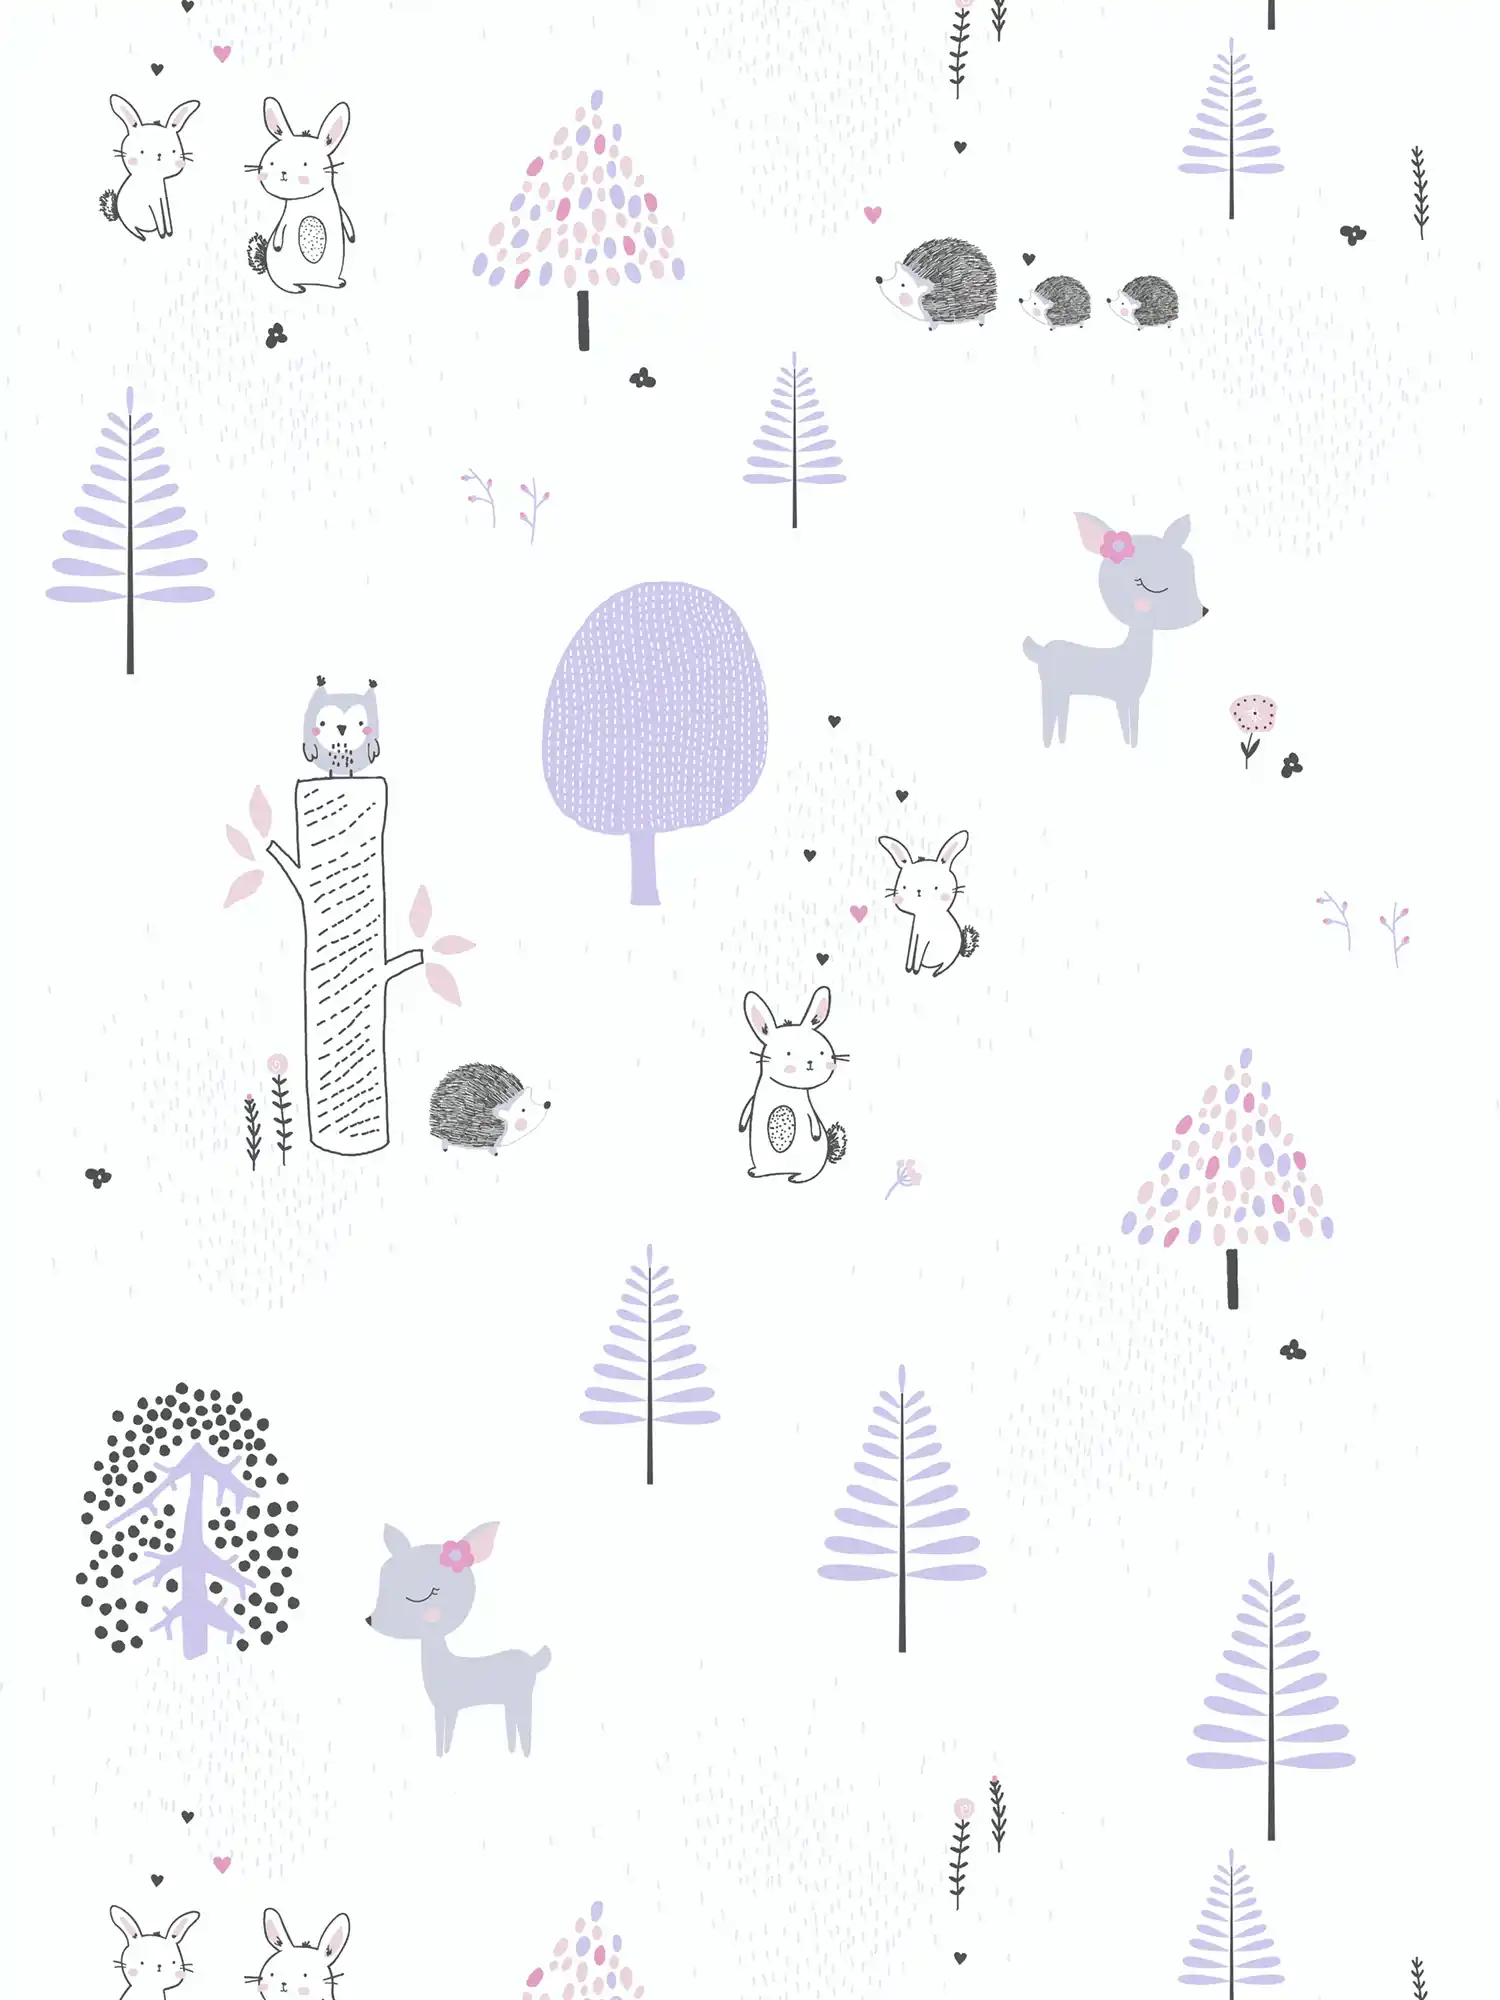         Papel pintado de habitación infantil animales del bosque - morado, blanco, gris
    